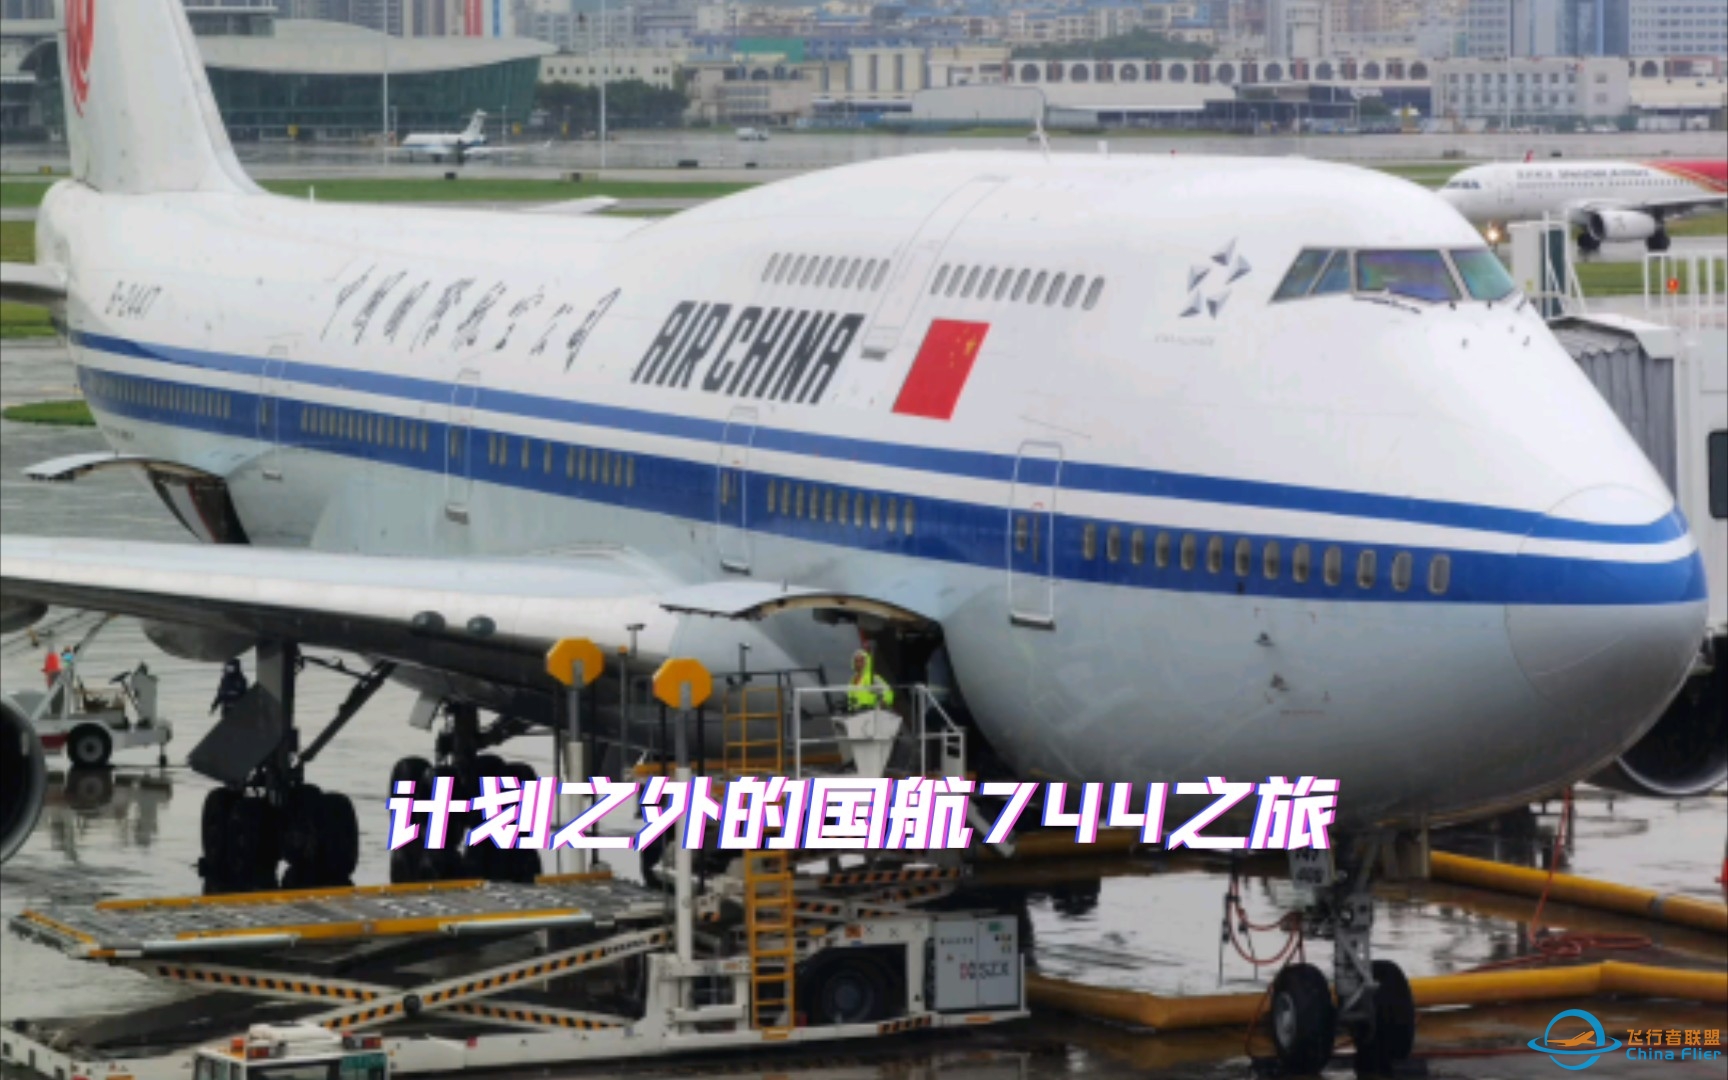 从机龄0.6年到28.6年，原本想体验深航最新空客A321NX，却意外坐上国航第二老的波音747-400（B-2447）-2285 